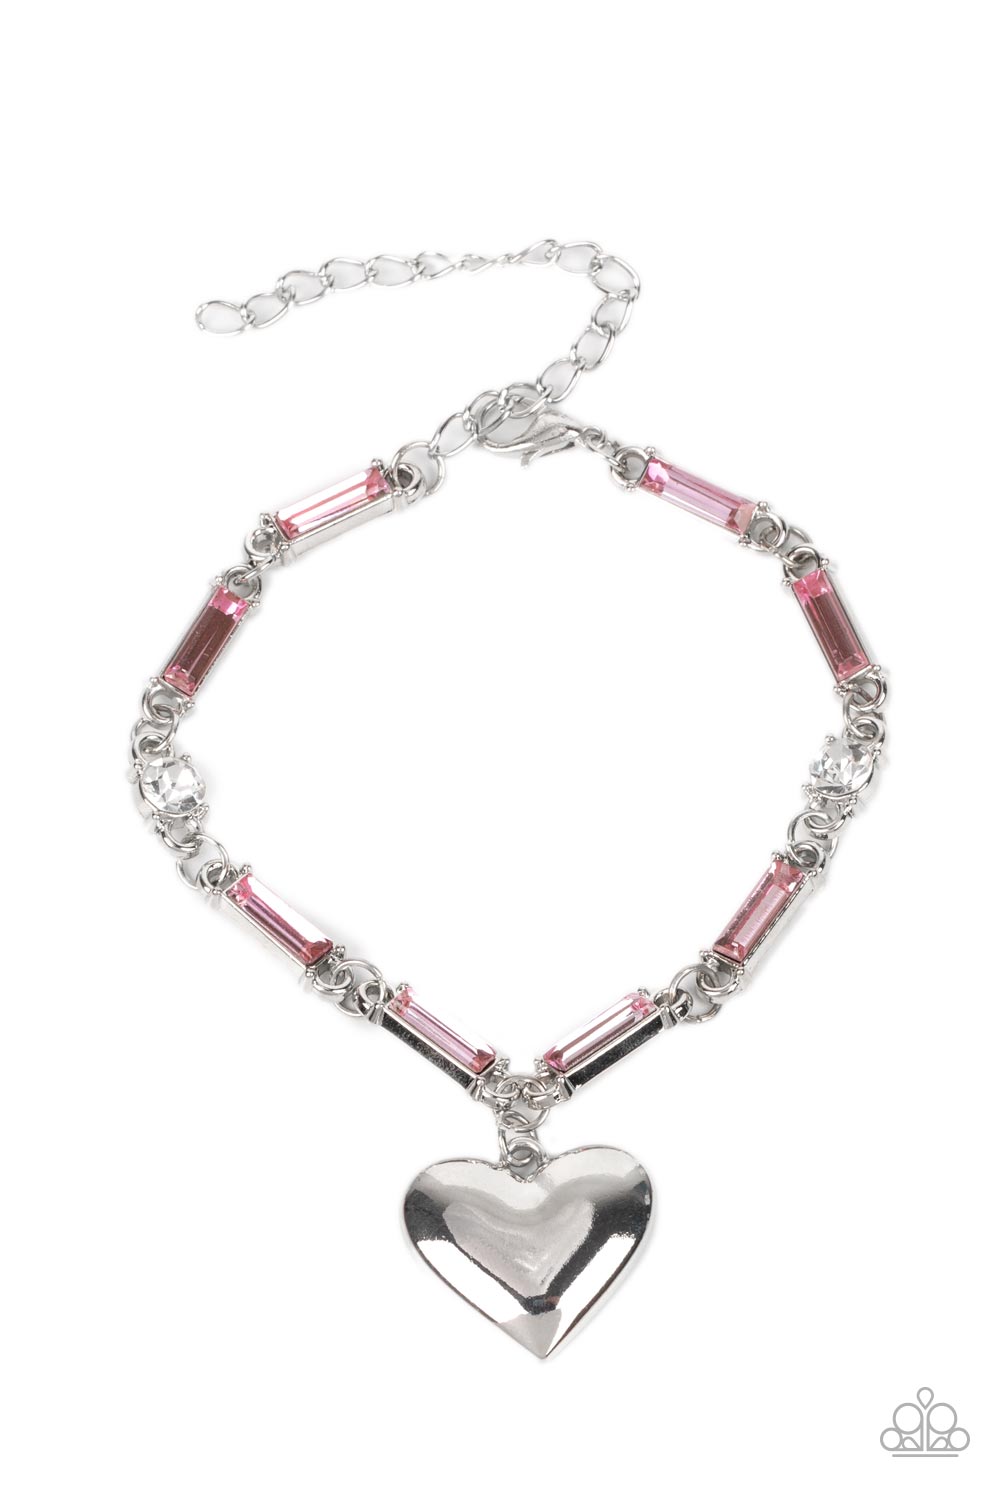 Sweetheart Secrets - Pink Bracelet freeshipping - JewLz4u Gemstone Gallery